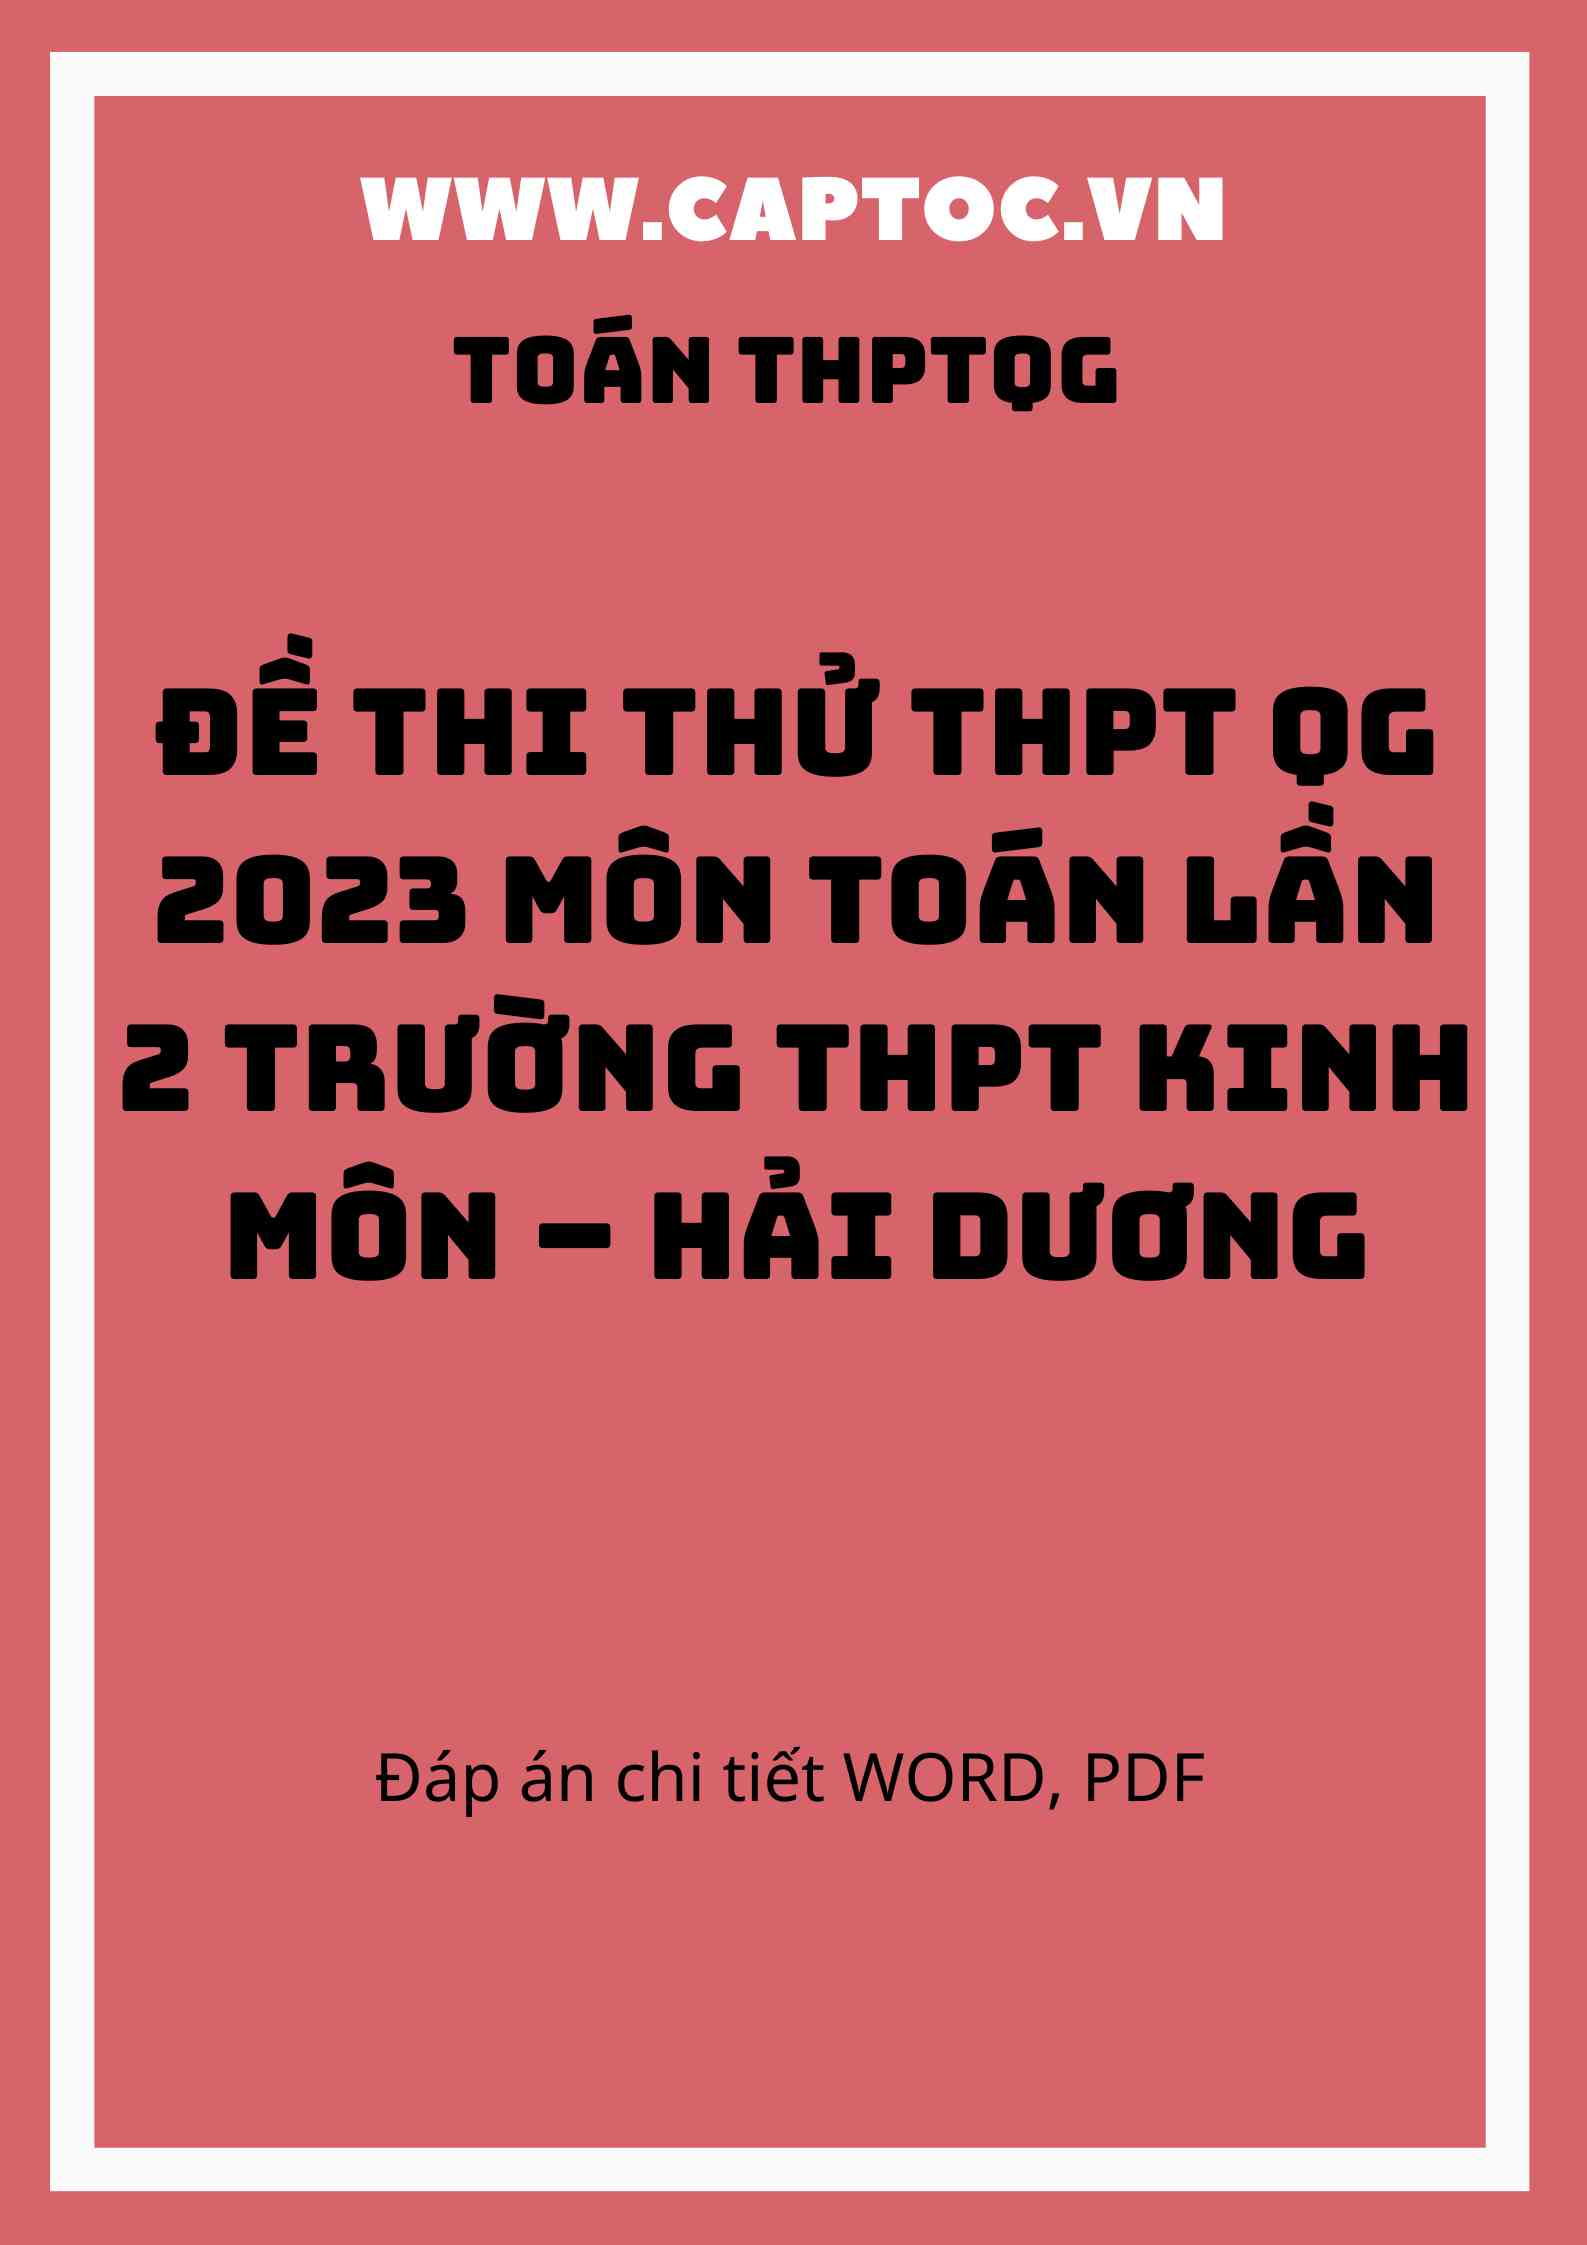 Đề thi thử THPT QG 2023 môn Toán lần 2 trường THPT Kinh Môn – Hải Dương